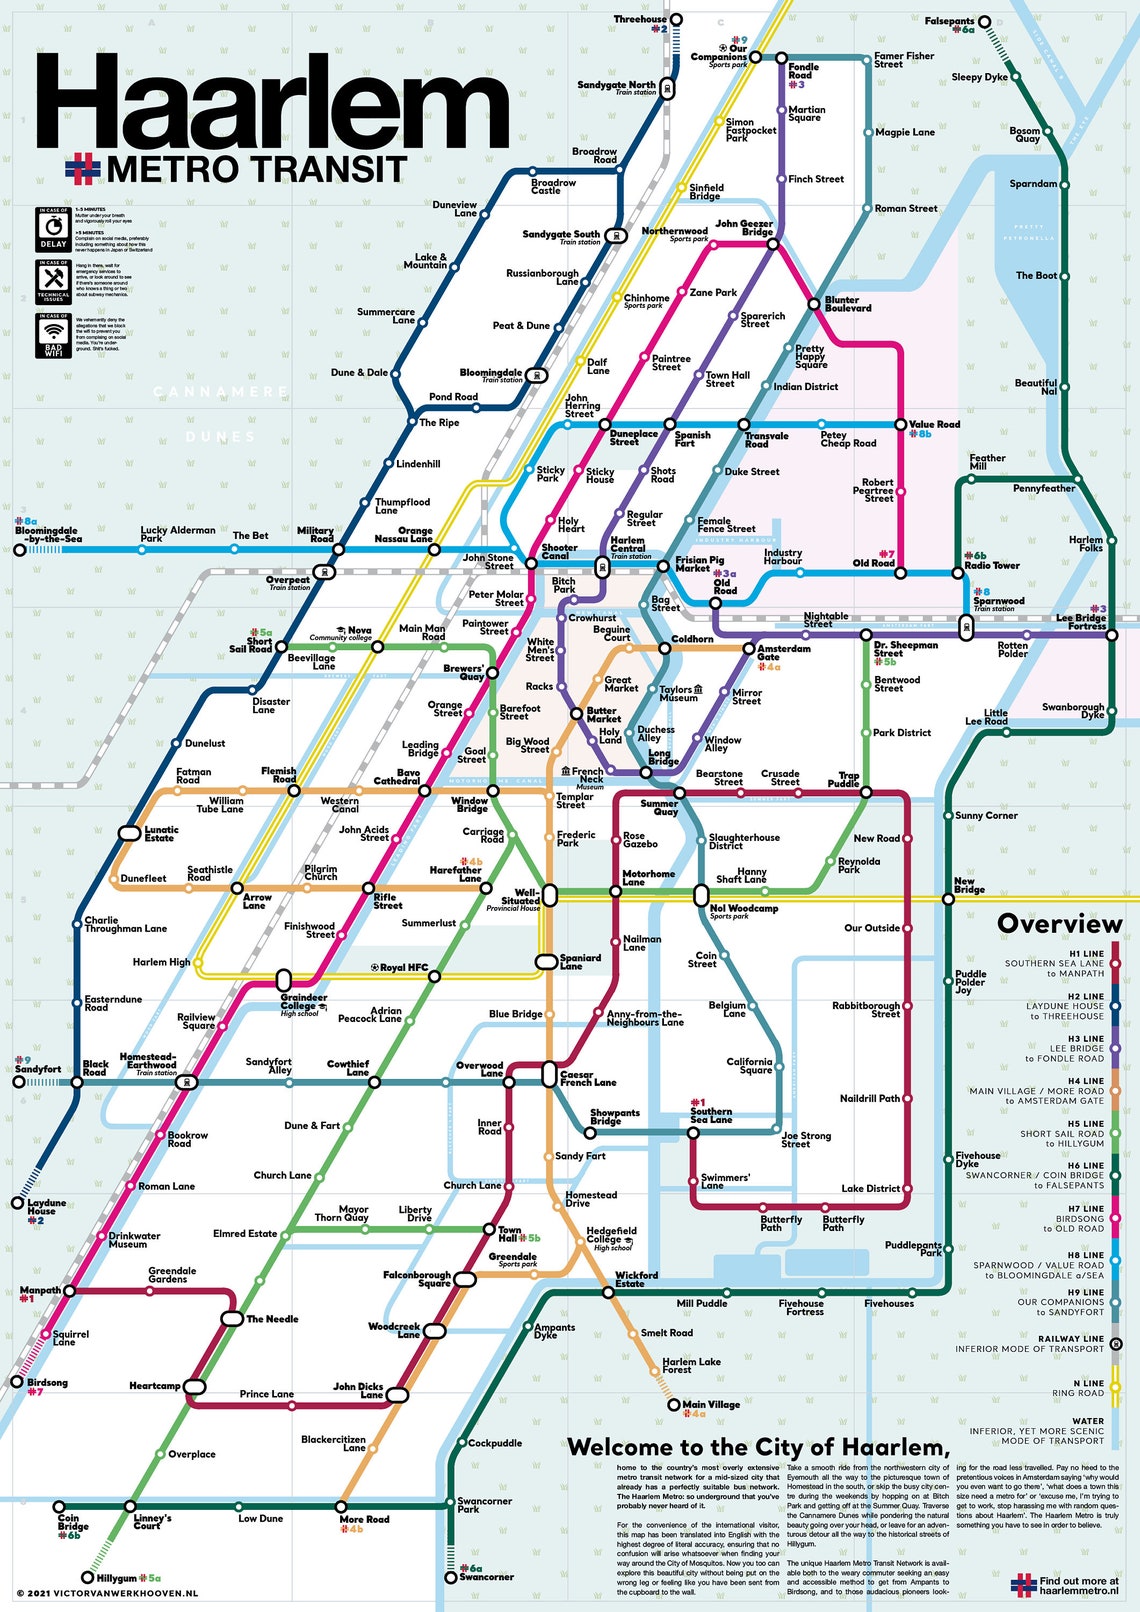 Online bestellen: Wandkaart - Stadsplattegrond Haarlem Metro Transit Map - Metrokaart | Victor van Werkhoven